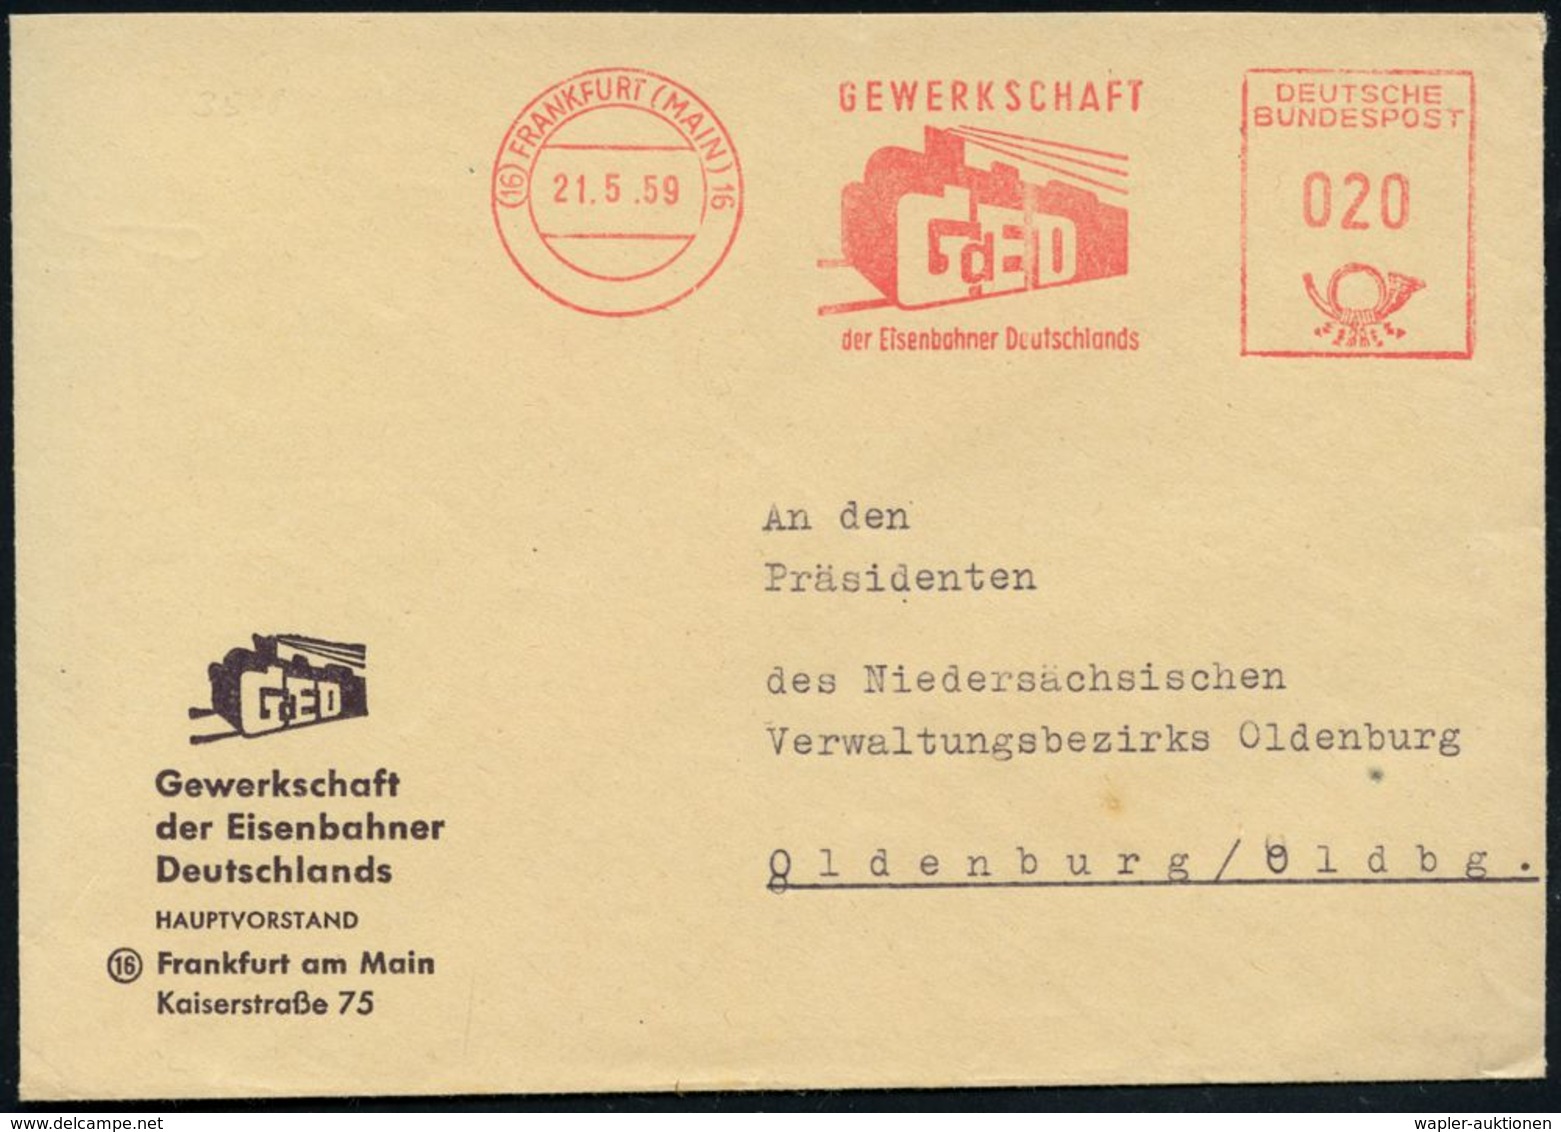 (16) FRANKFURT (MAIN) 16/ GEWERKSCHAFT/ GdED/ Der Eisenbahner Deutschlands 1959 (21.5.) AFS = Gewerkschafts-Logo Dampflo - Eisenbahnen